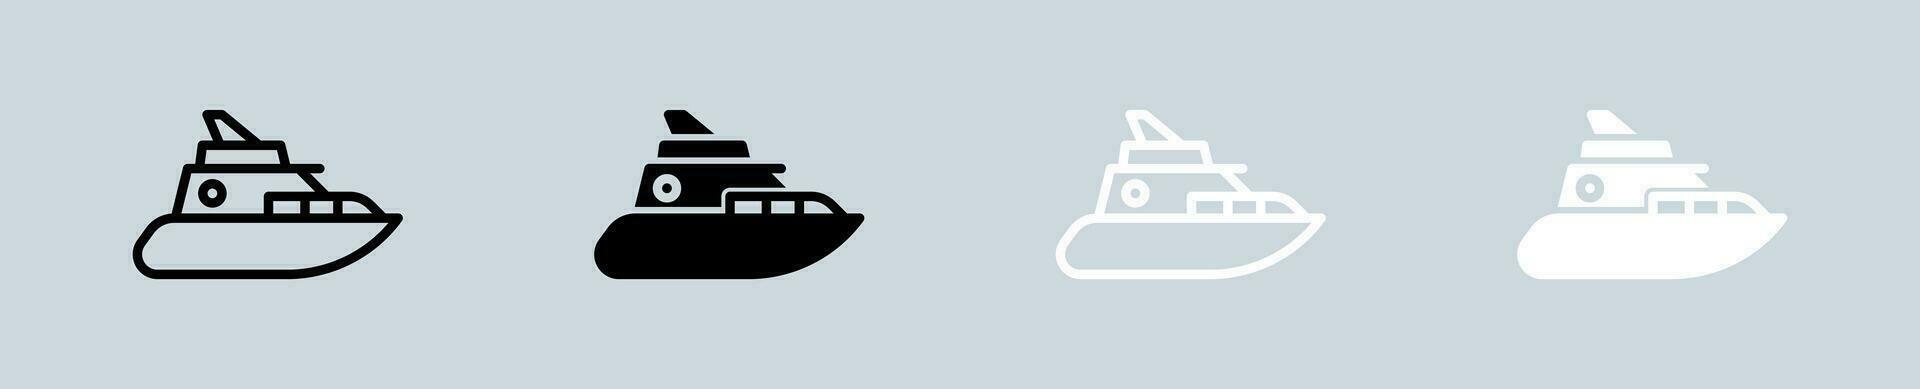 Yacht ikon uppsättning i svart och vit. fartyg tecken vektor illustration.